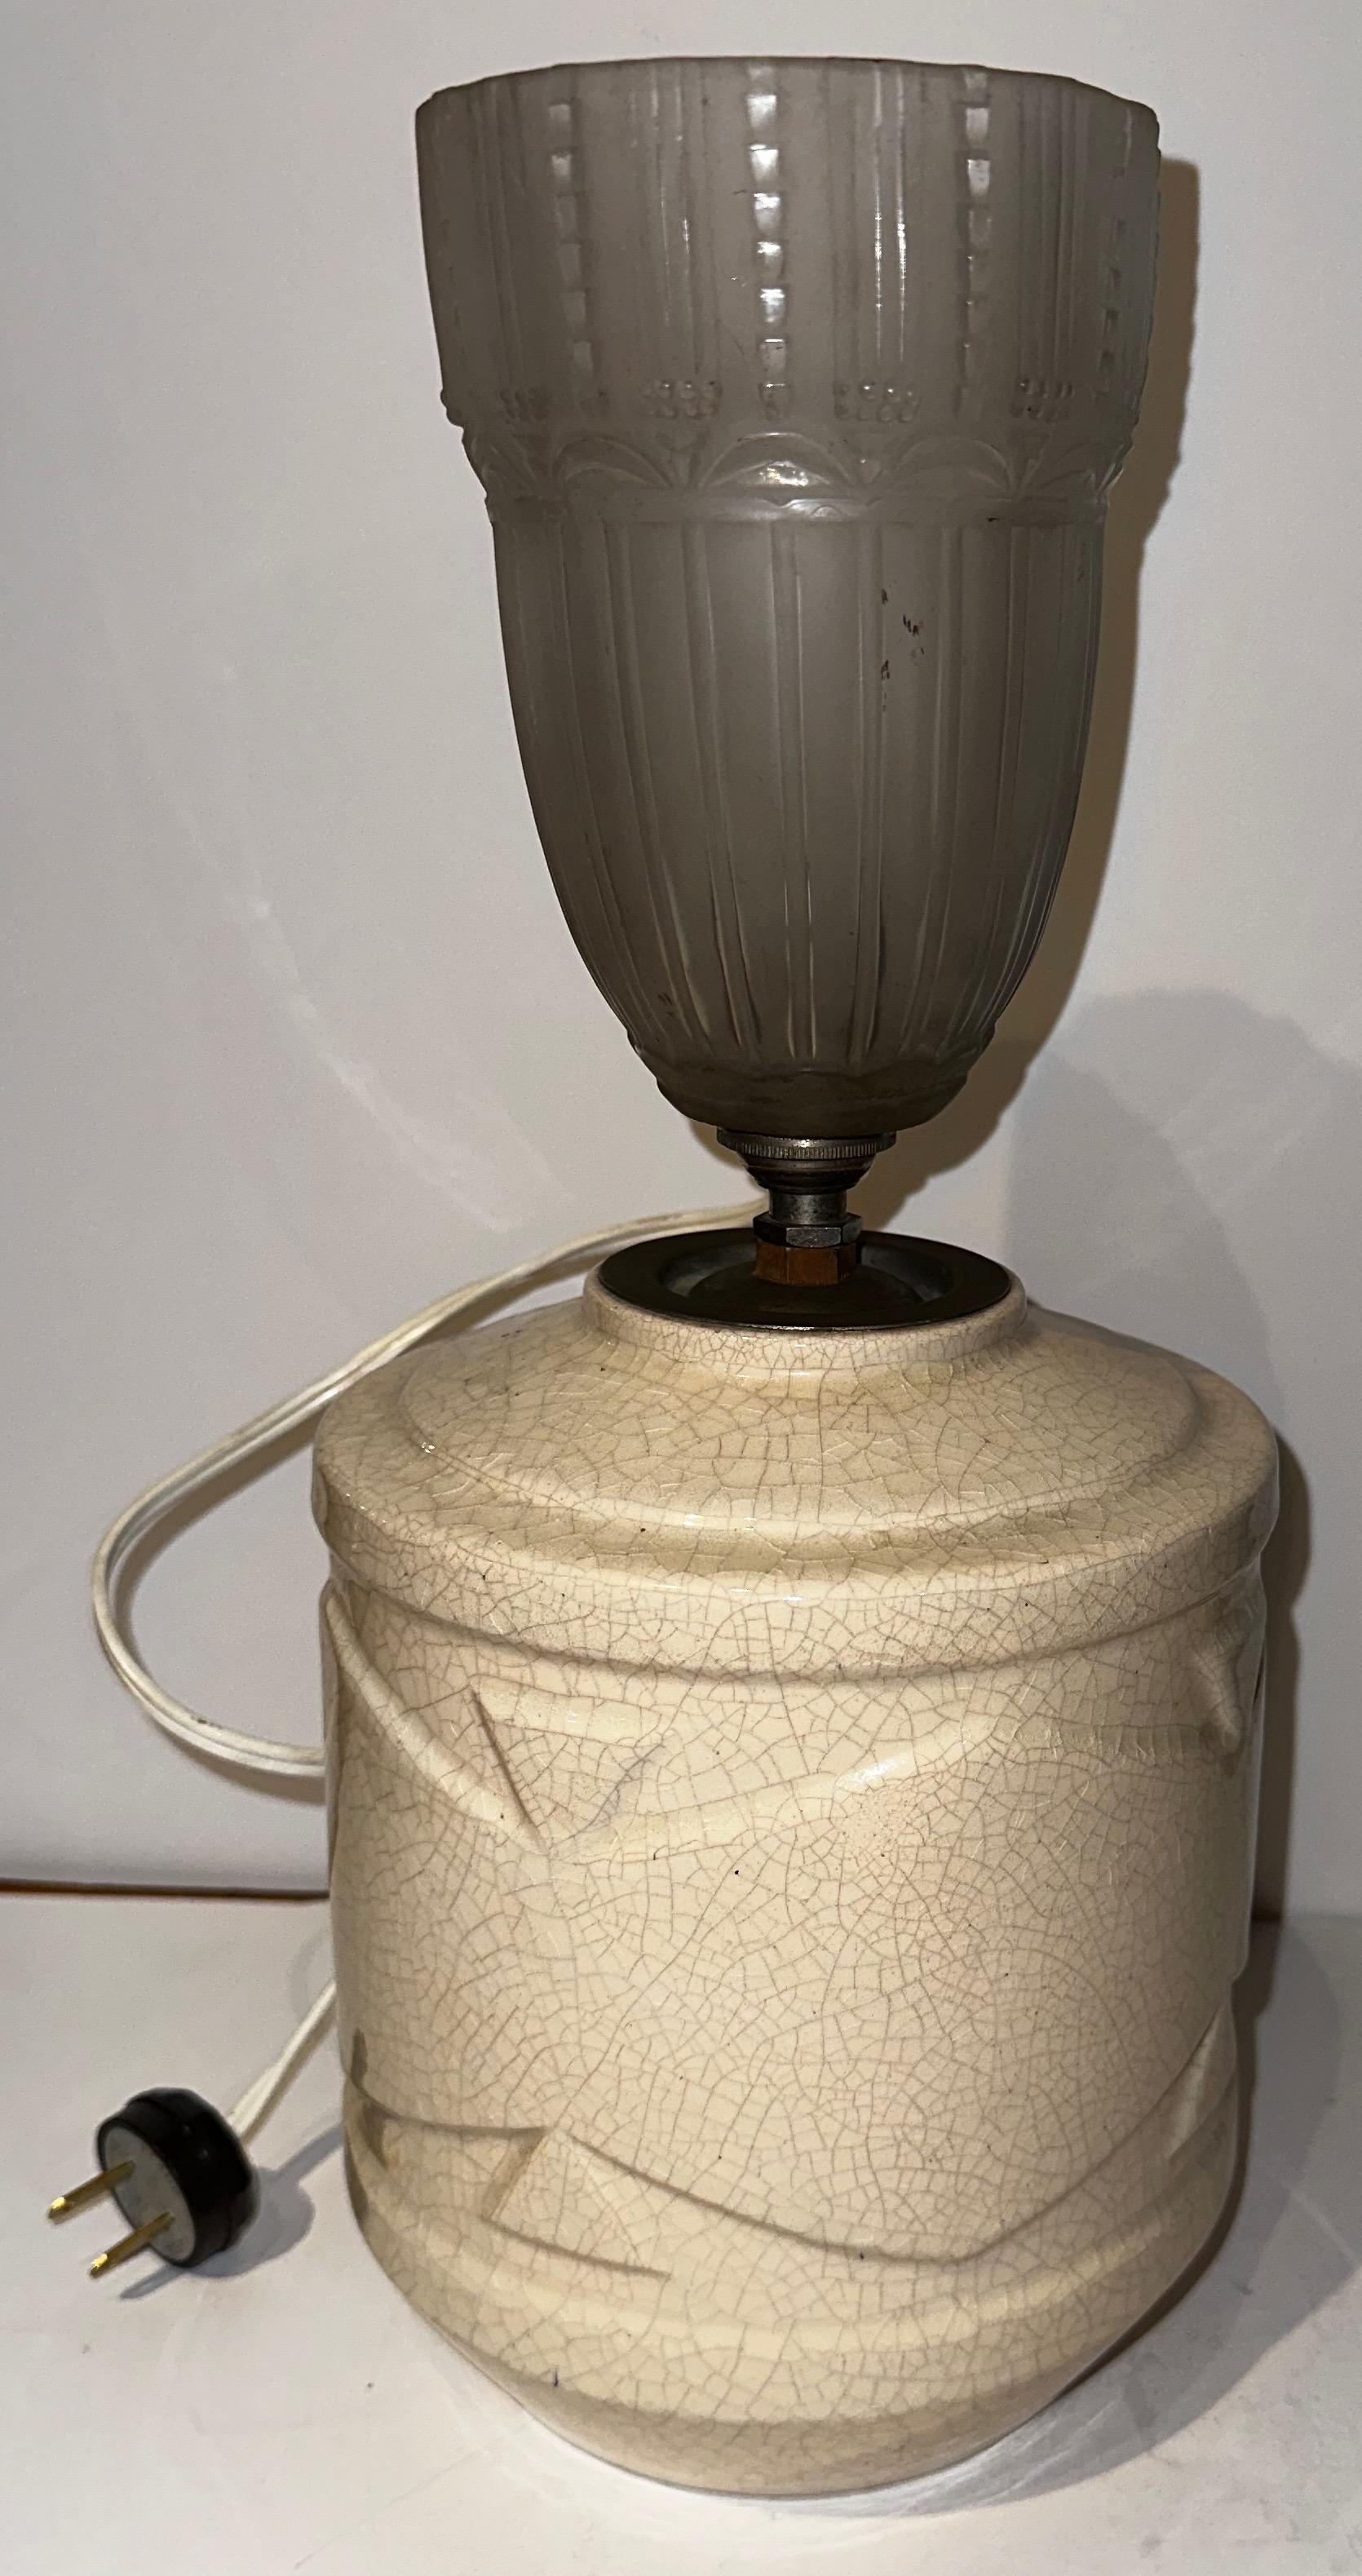 Lampe de table à vase en céramique Art déco de Robert Lallemant (français, 1902-1954). Vase en céramique à glaçure beige craquelée, de forme cylindrique avec bande centrale surélevée en dents de scie, par Robert Lallemant, France, années 1930. Signé